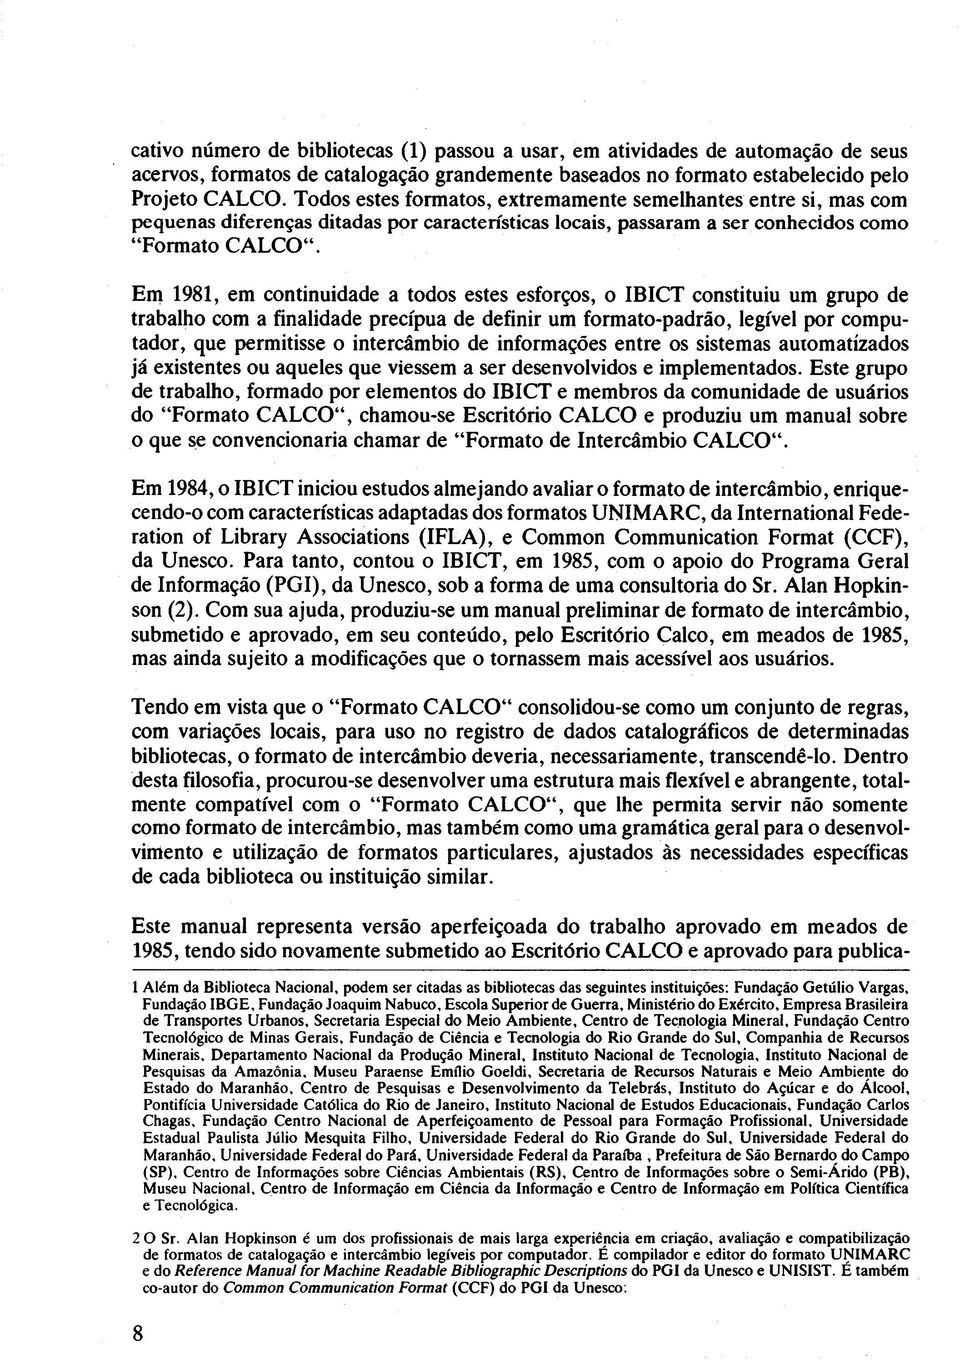 Em 1981, em continuidade a todos estes esforços, o IBICT constituiu um grupo de trabalho com a finalidade precipua de definir um formato-padrão, legível por computador, que permitisse o intercâmbio